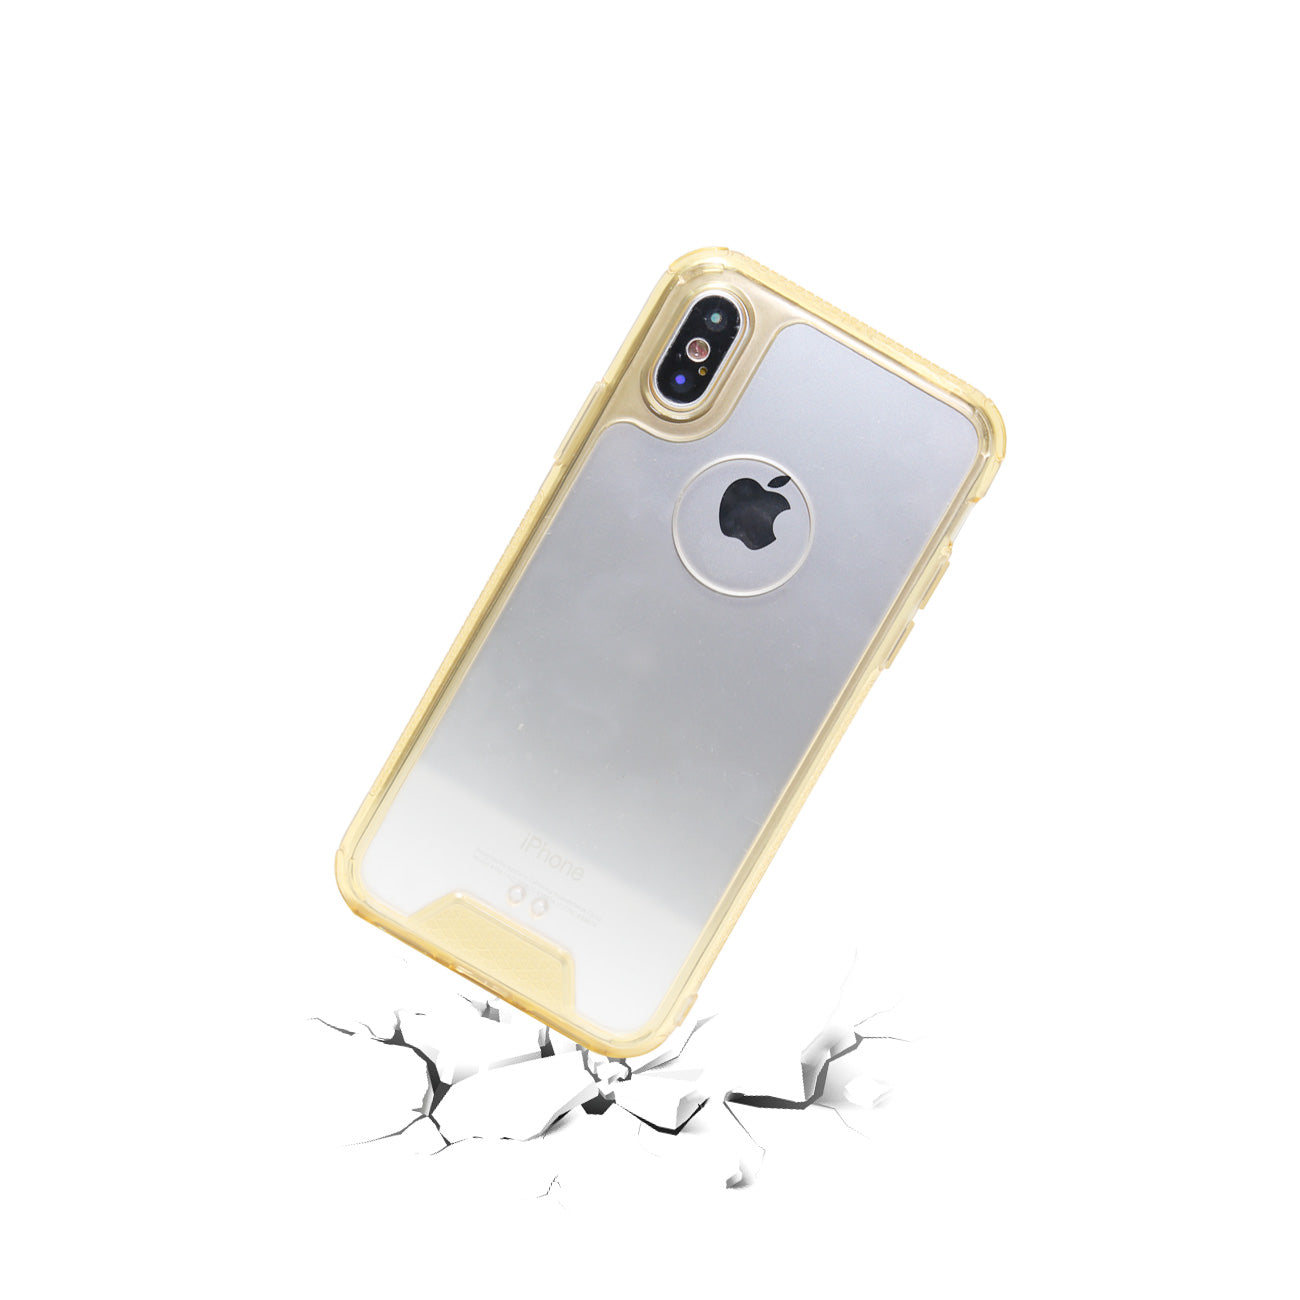 iPhone X Slim Bumper TPU Back Cover In Clear Gold